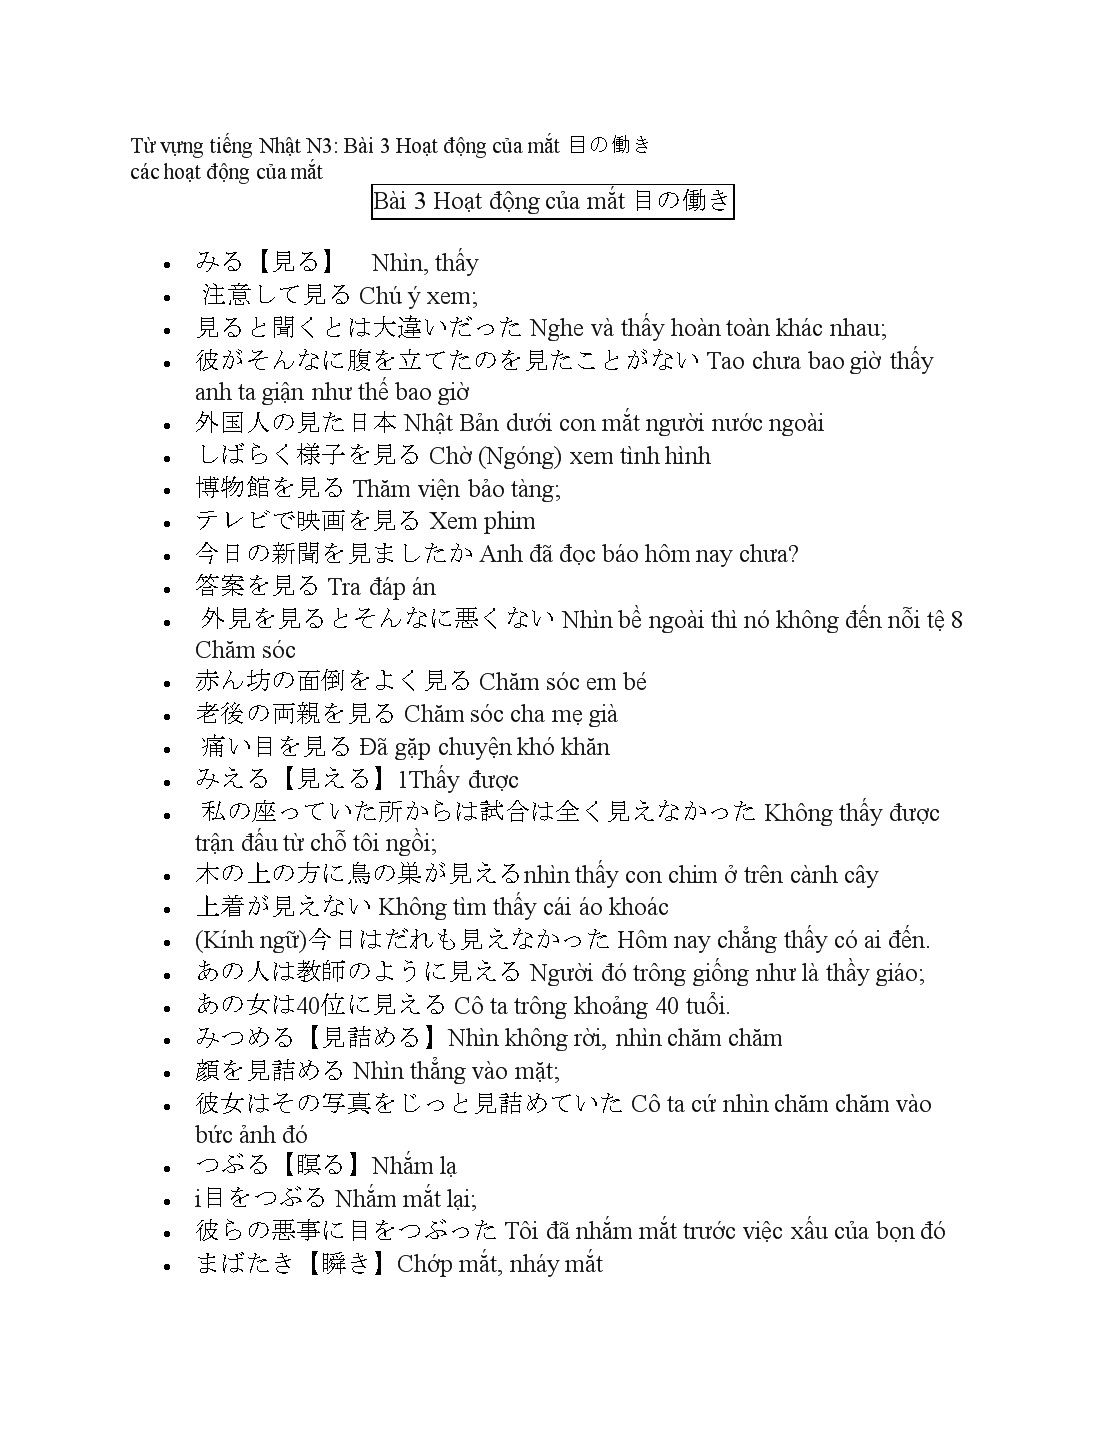 Từ vựng tiếng Nhật N3 trang 5